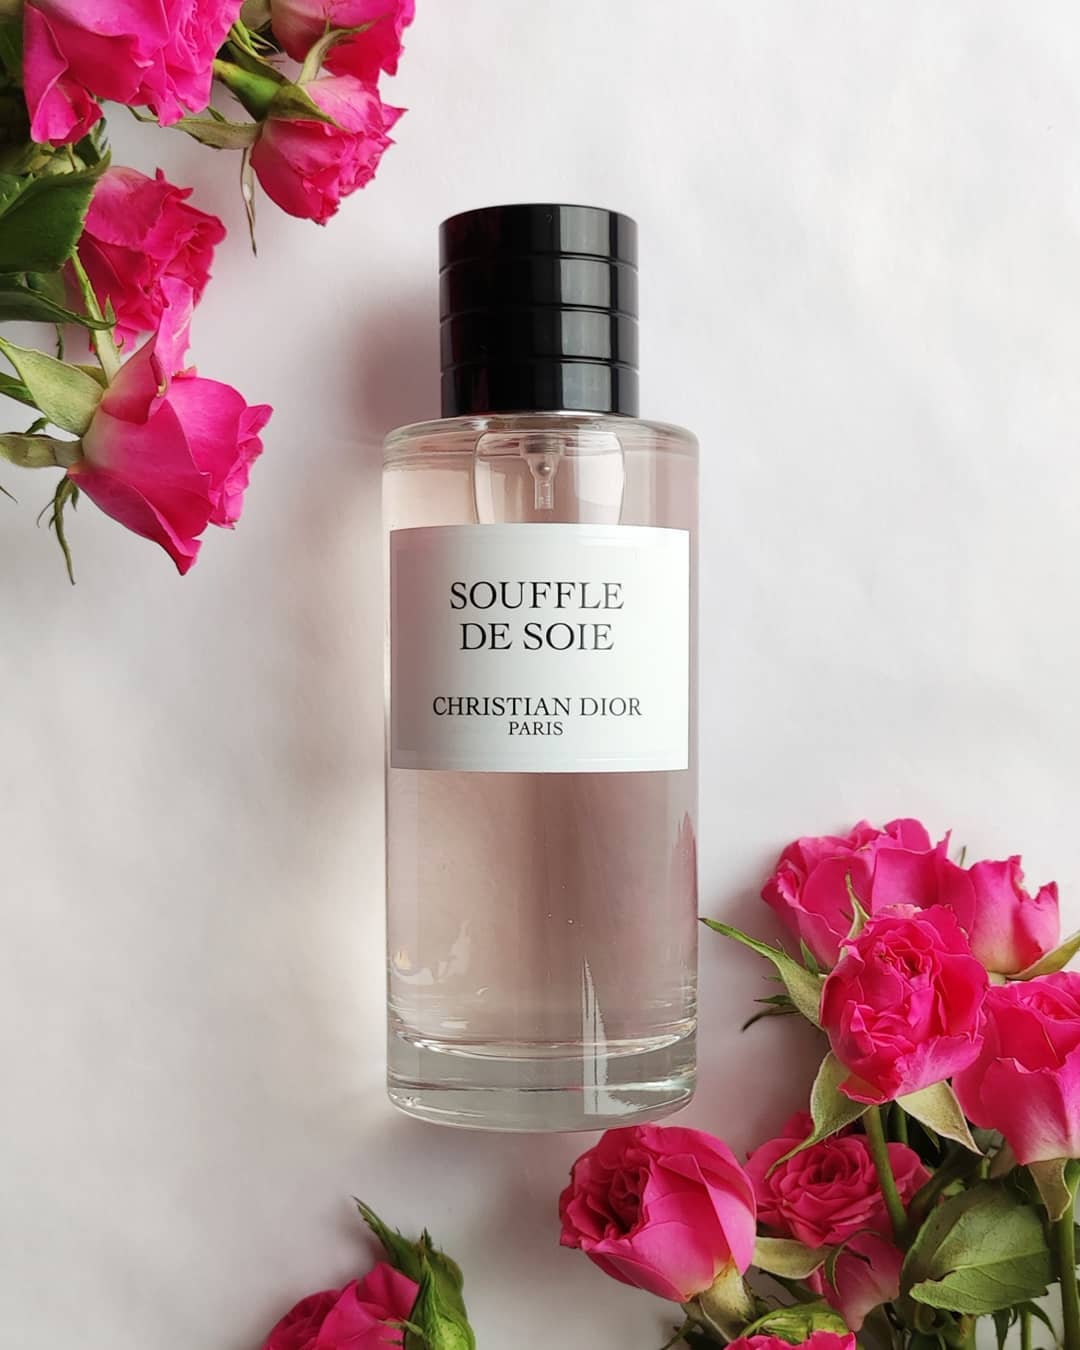 Souffle De Soie by Christian Dior - Nụ hôn sau gáy của người tình